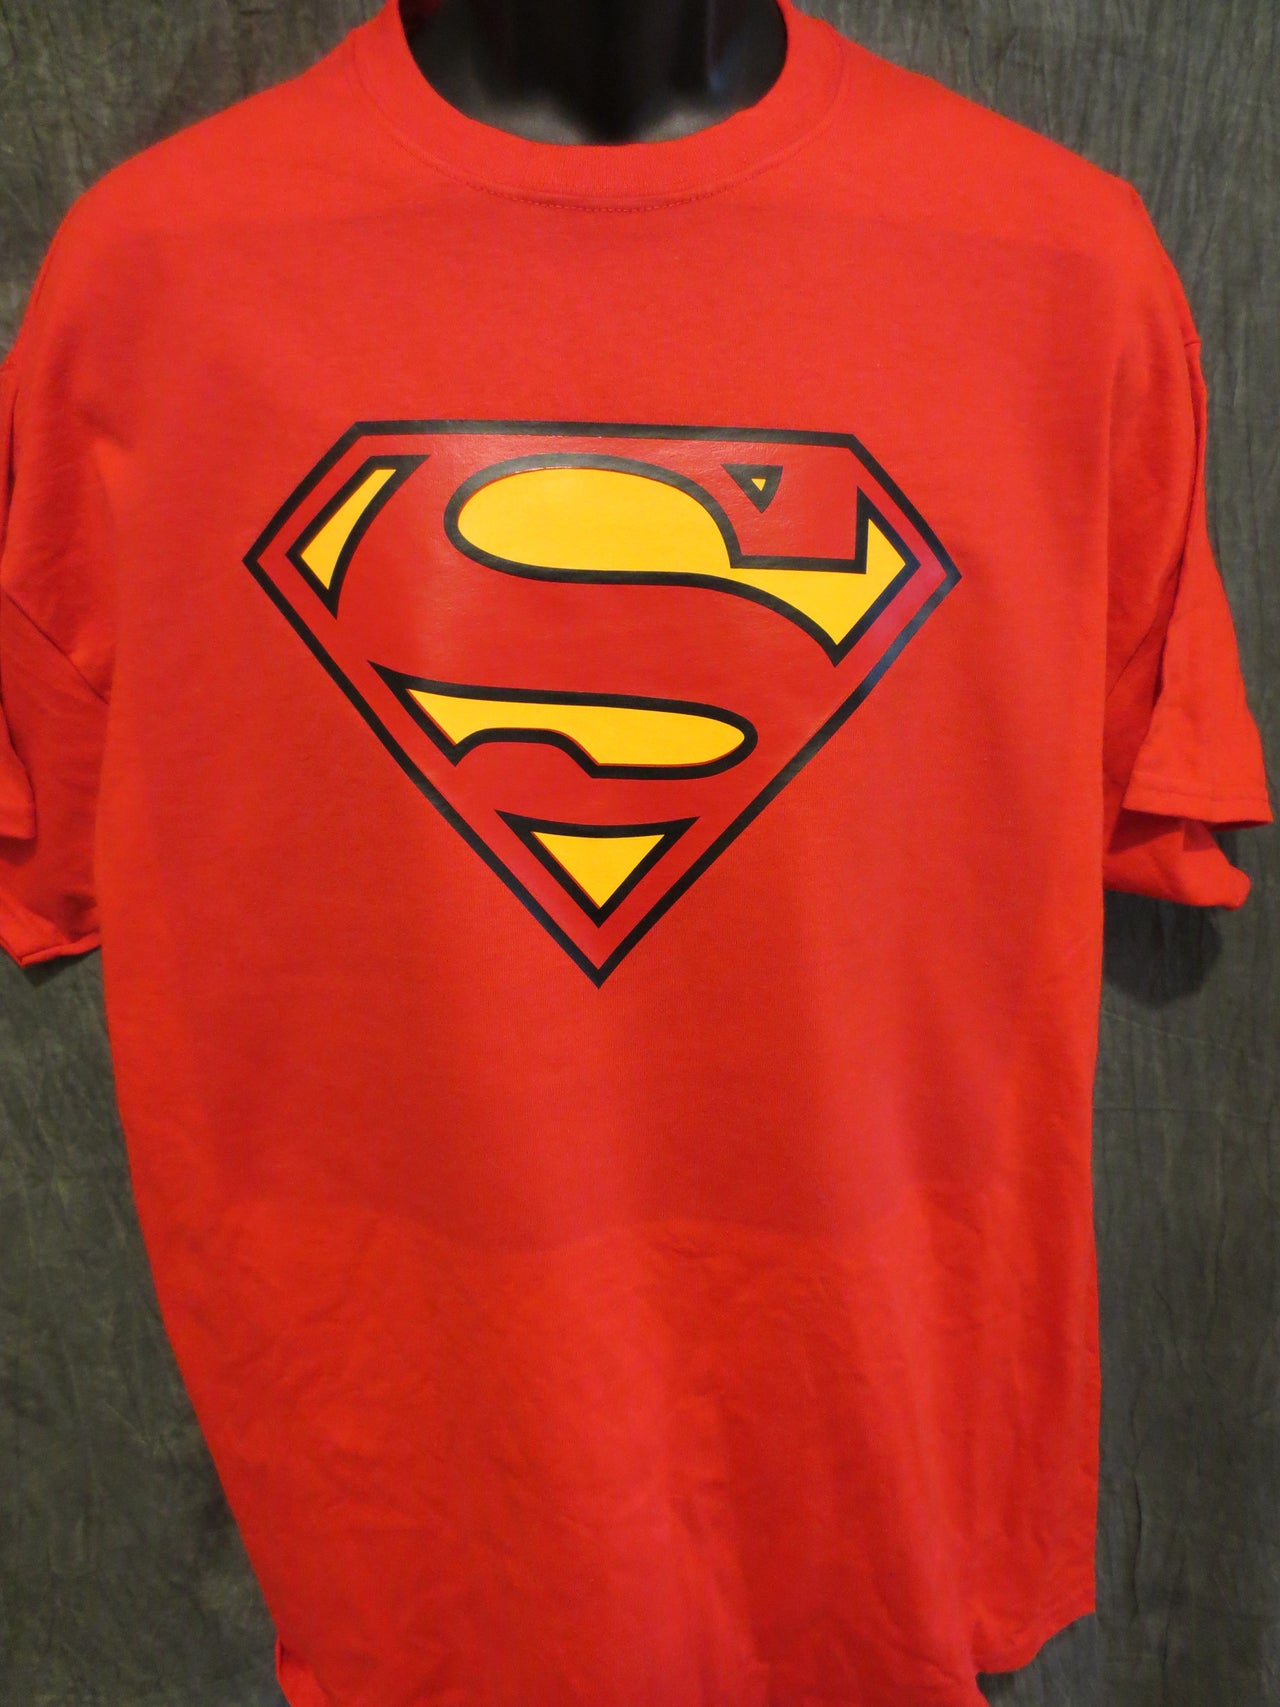 Superman Classic Logo Red Tshirt - TshirtNow.net - 8